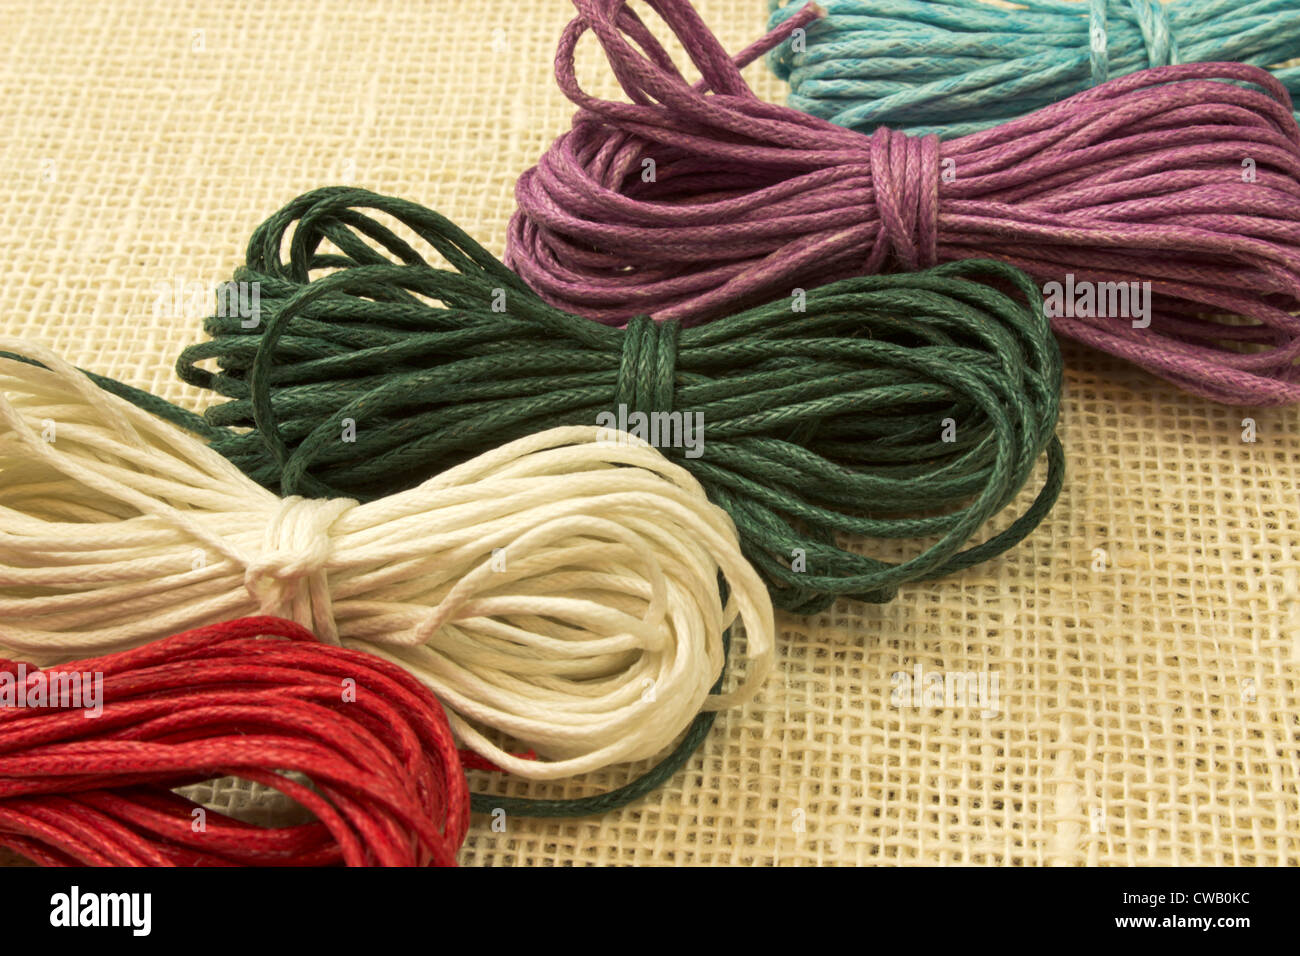 Belle image de cordes avec cinq couleurs différentes Banque D'Images